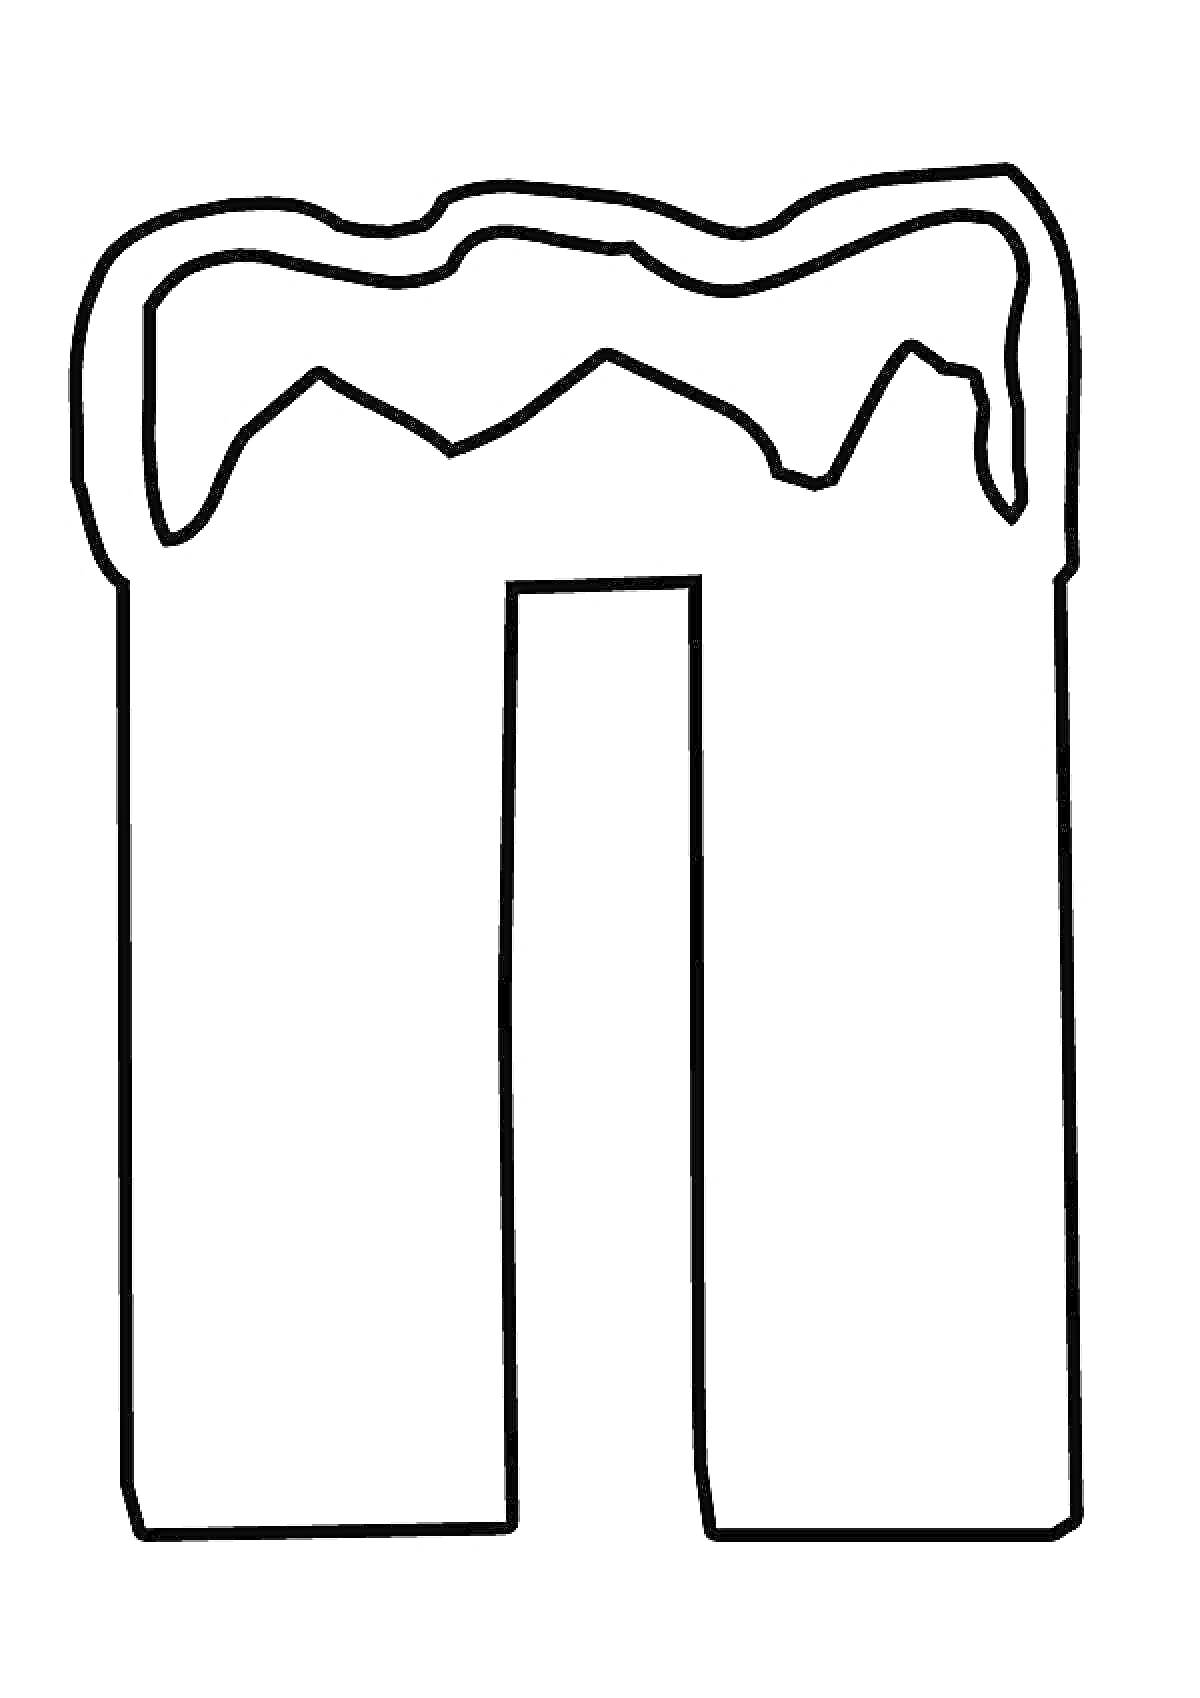 Раскраска Буква П с элементом снега на верхней части